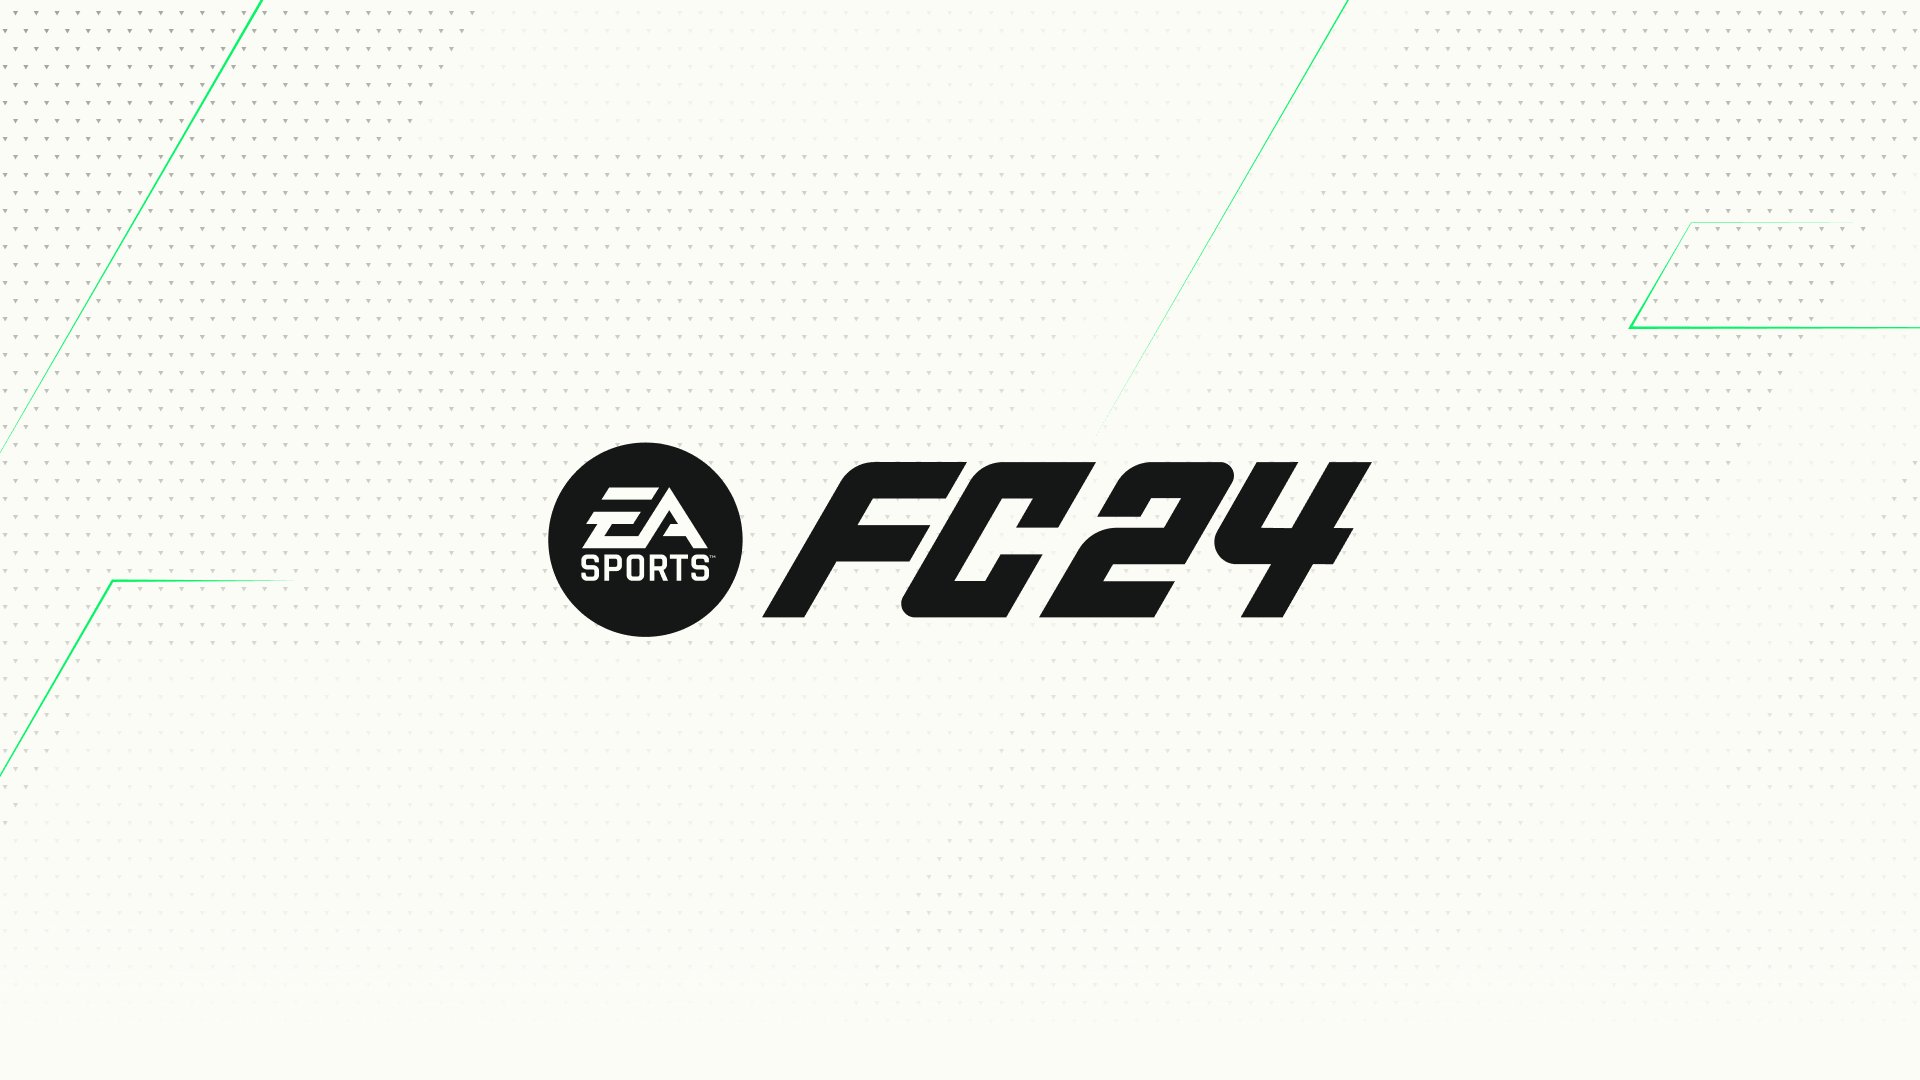 EA Sports FC 24, Haaland uomo copertina e reveal il 13 Luglio per noto  insider - News Playstation 5, Xbox Series X, S